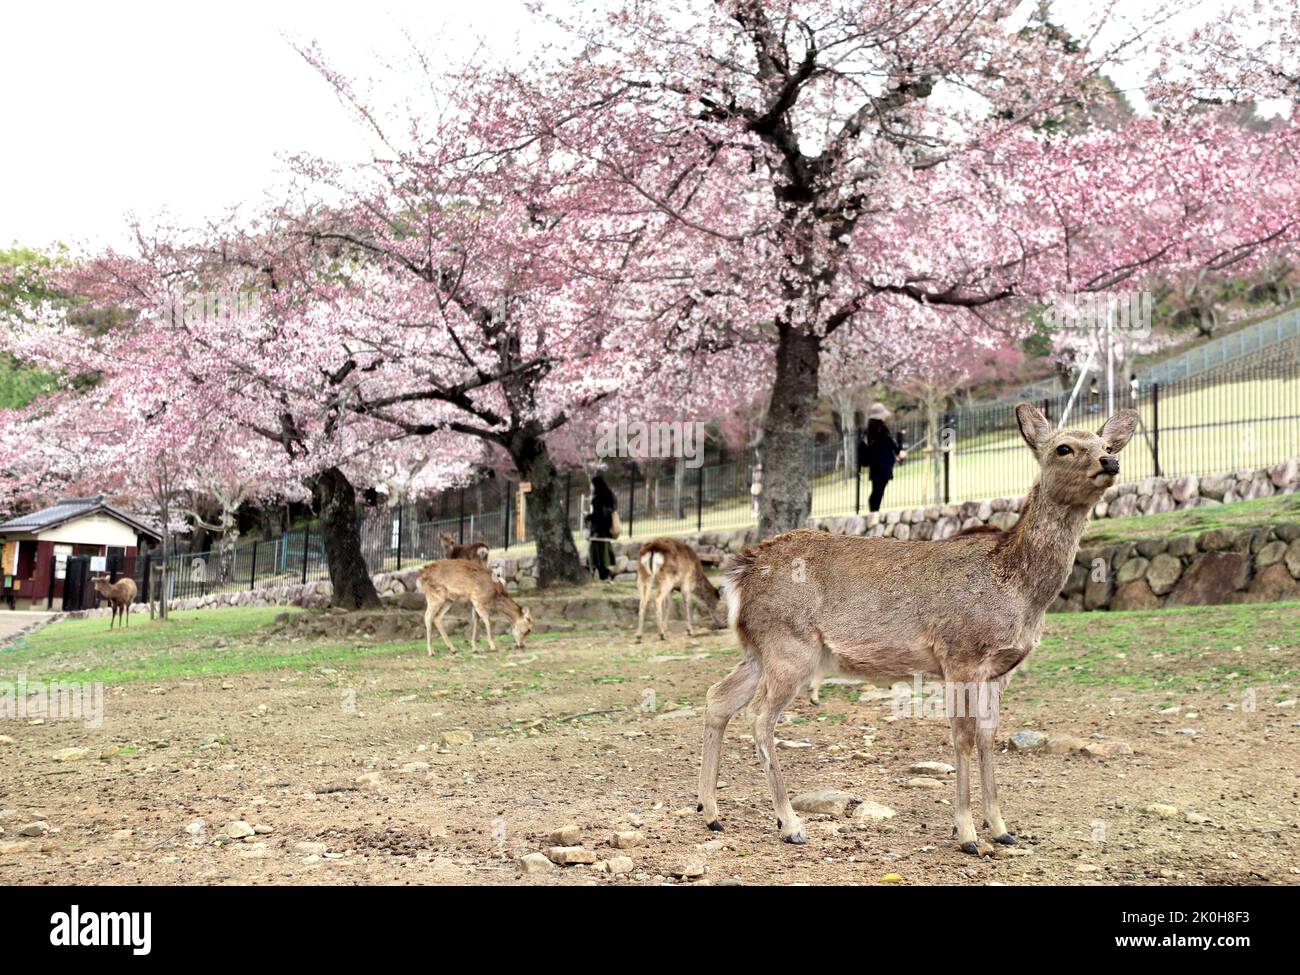 Alberi sakura fiorenti e cervi sika (Cervus nippon), Nara, Giappone. Famosa attrazione turistica - cervi selvaggi nel Parco di Nara. Stagione dei fiori Sakura. Ciliegio bl Foto Stock